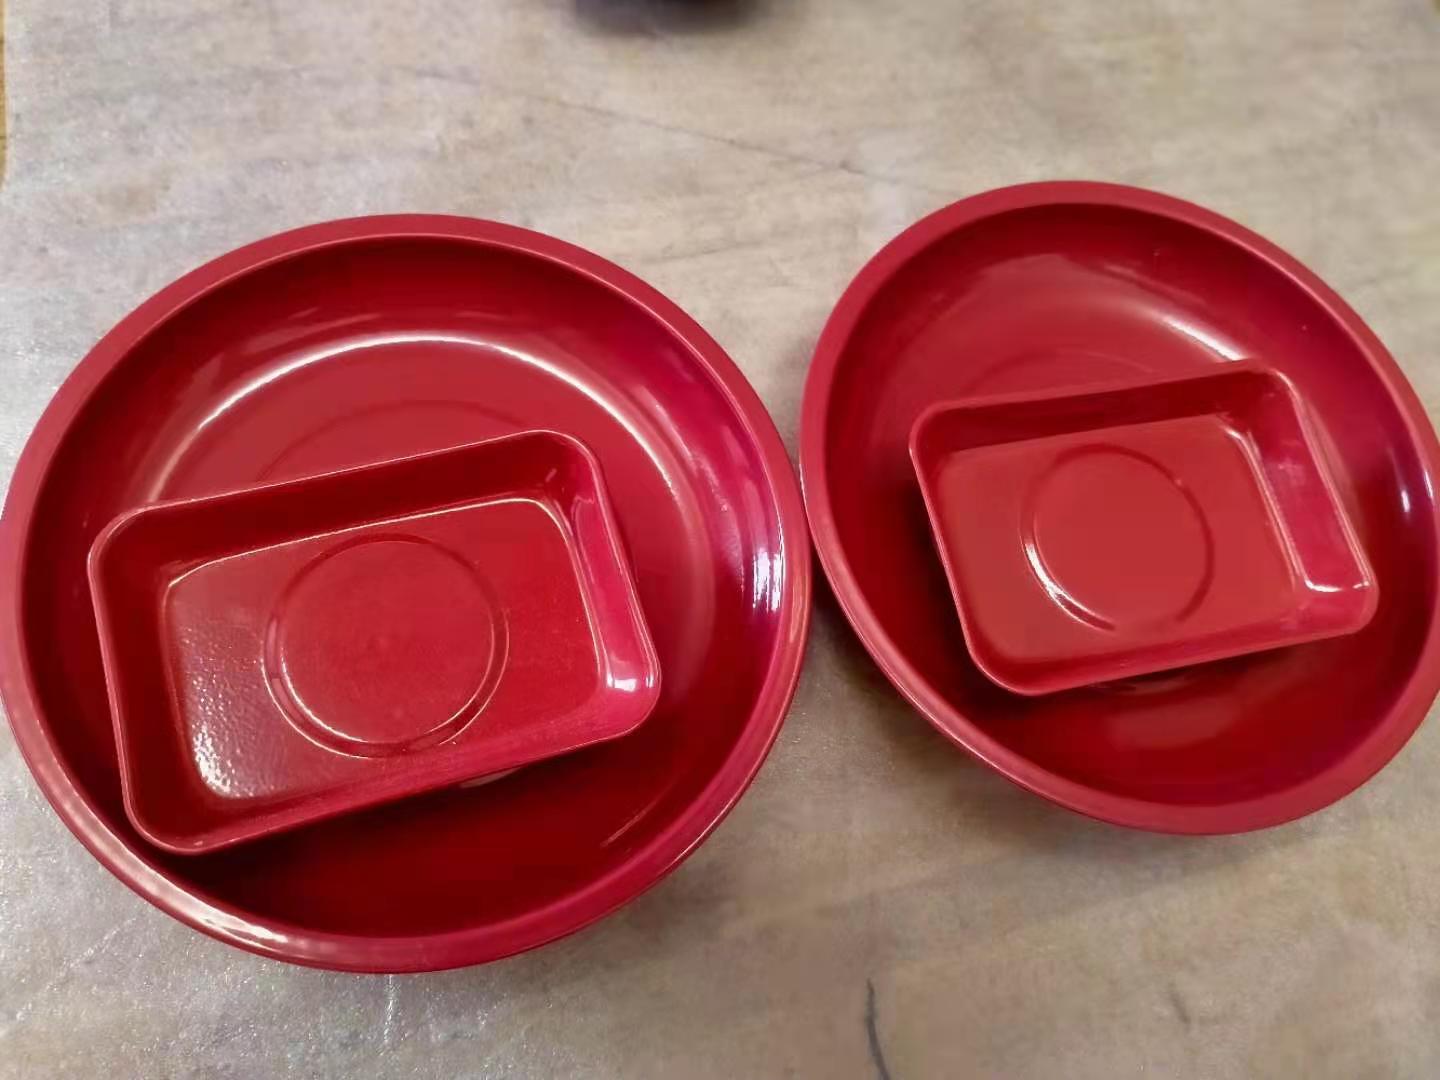 红色喷塑磁性收纳碗 汽保机修磁力盘 底部装配磁铁 网上热销磁碗 可以牢牢吸附在铁制品上在倒挂状态磁碗和小零件都不会滑落7